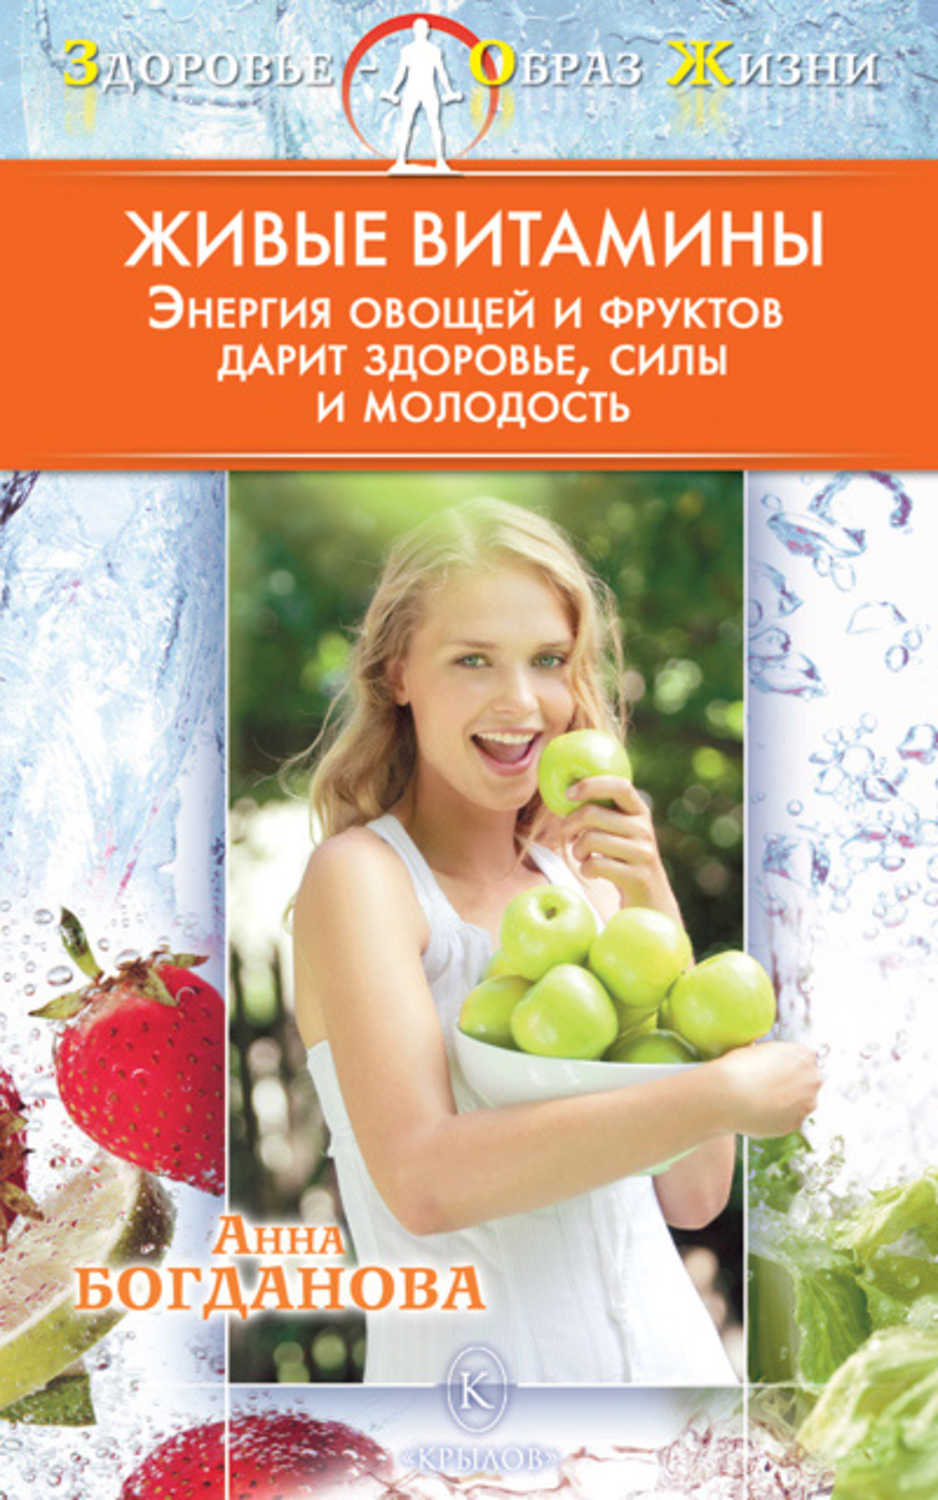 Анна Богданова - «Живые витамины»